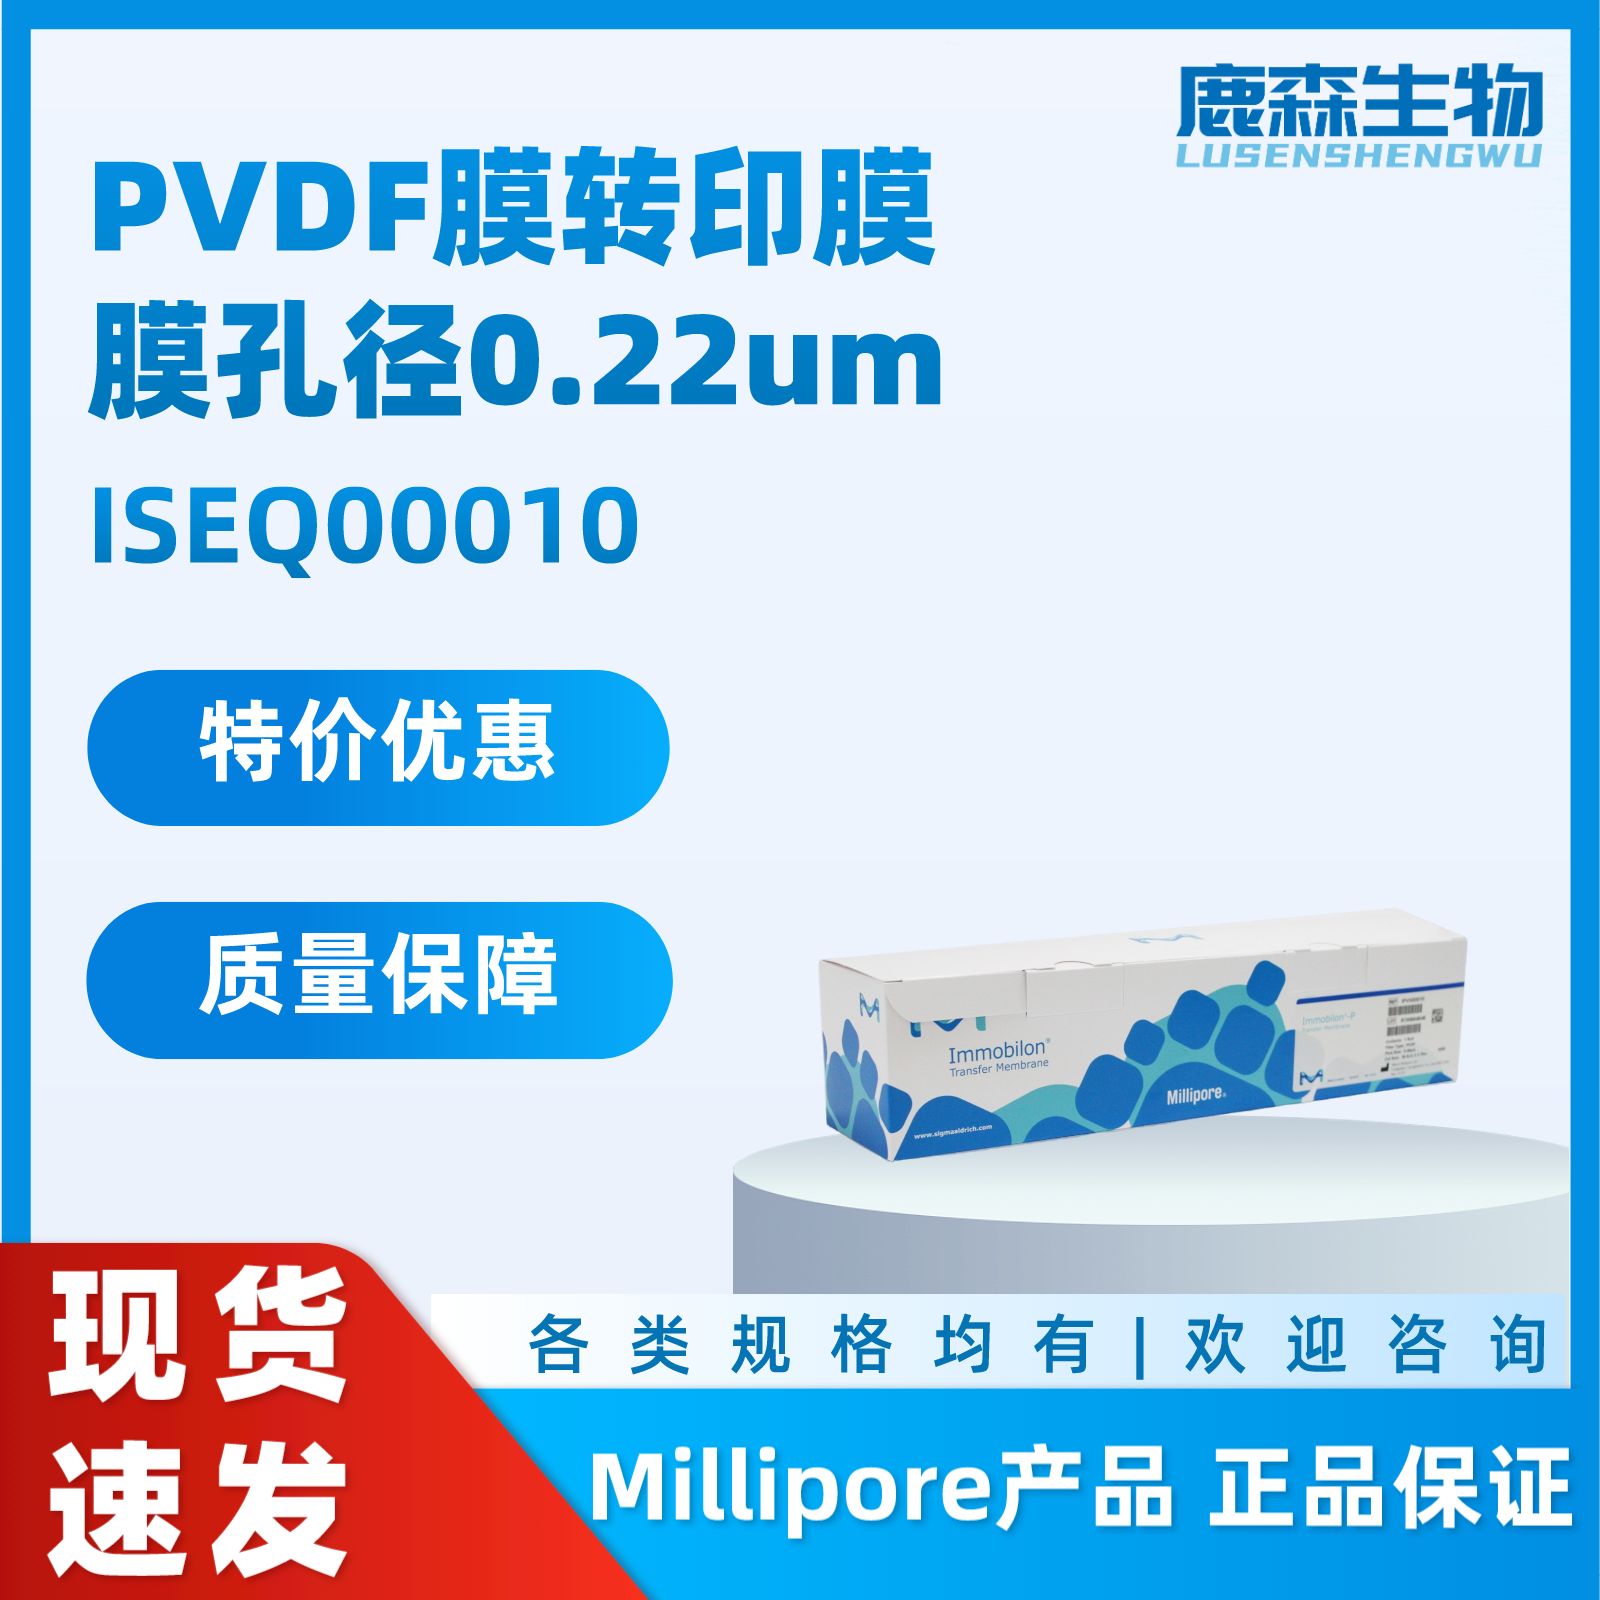 PVDF膜转印膜,膜孔径0.22um ISEQ00010 Millipore